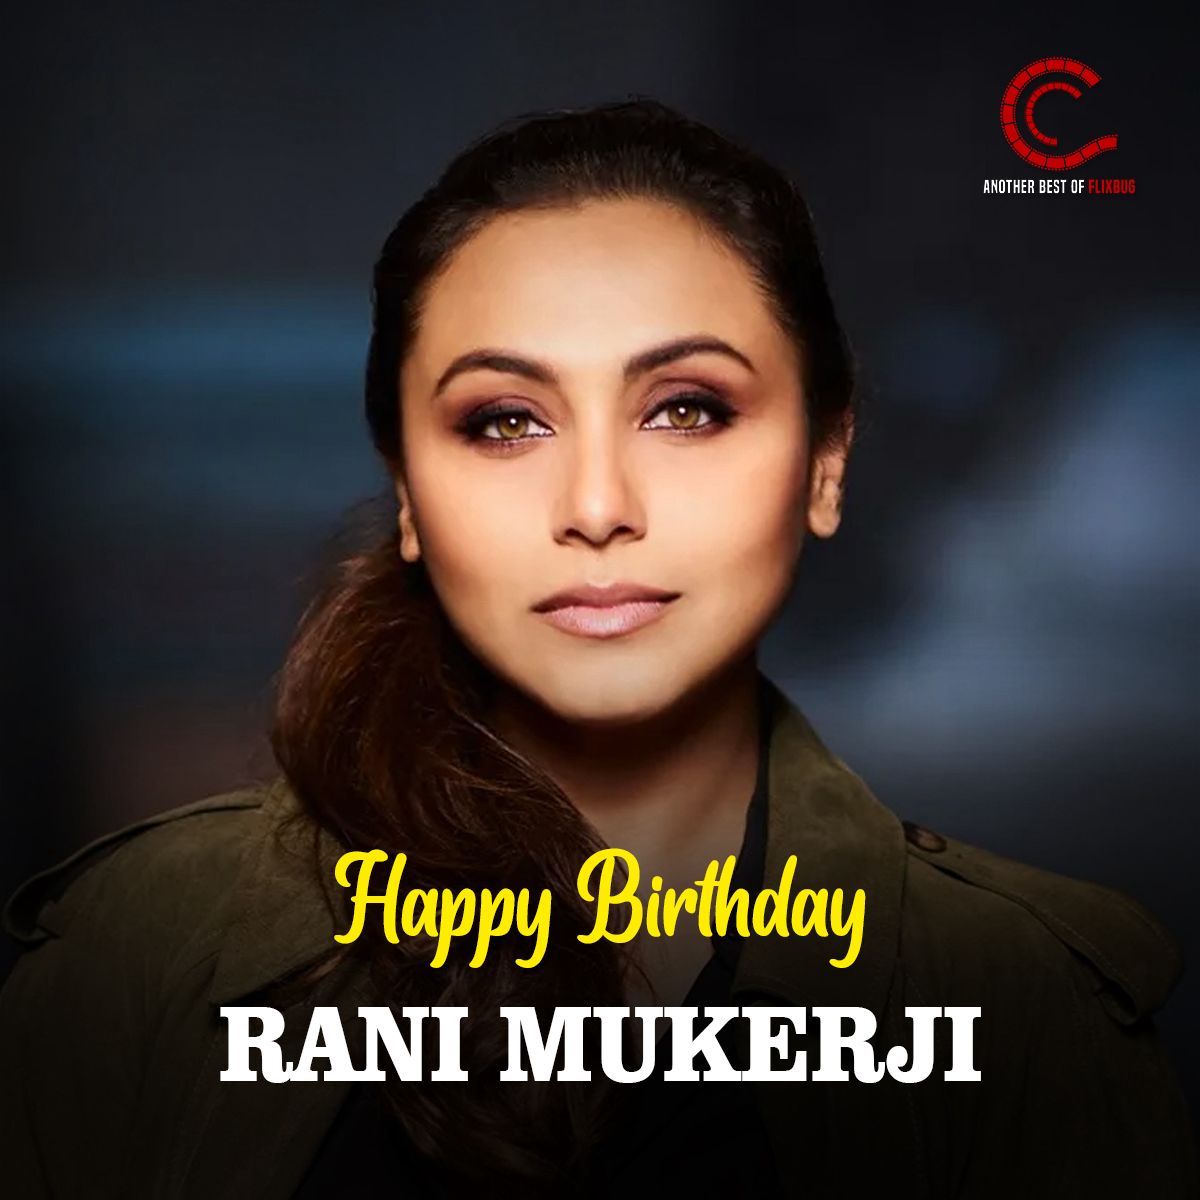 𝐂𝐢𝐢𝐧𝐞𝐞𝟑 Wishing a very Happy Birthday to the incredible actress Rani Mukerji from Ciinee #ranimukerji #birthday #birthdaywish #queenofhearts #gorgeousrani #bollywoodqueen #bollywood #actress #post #ciinee